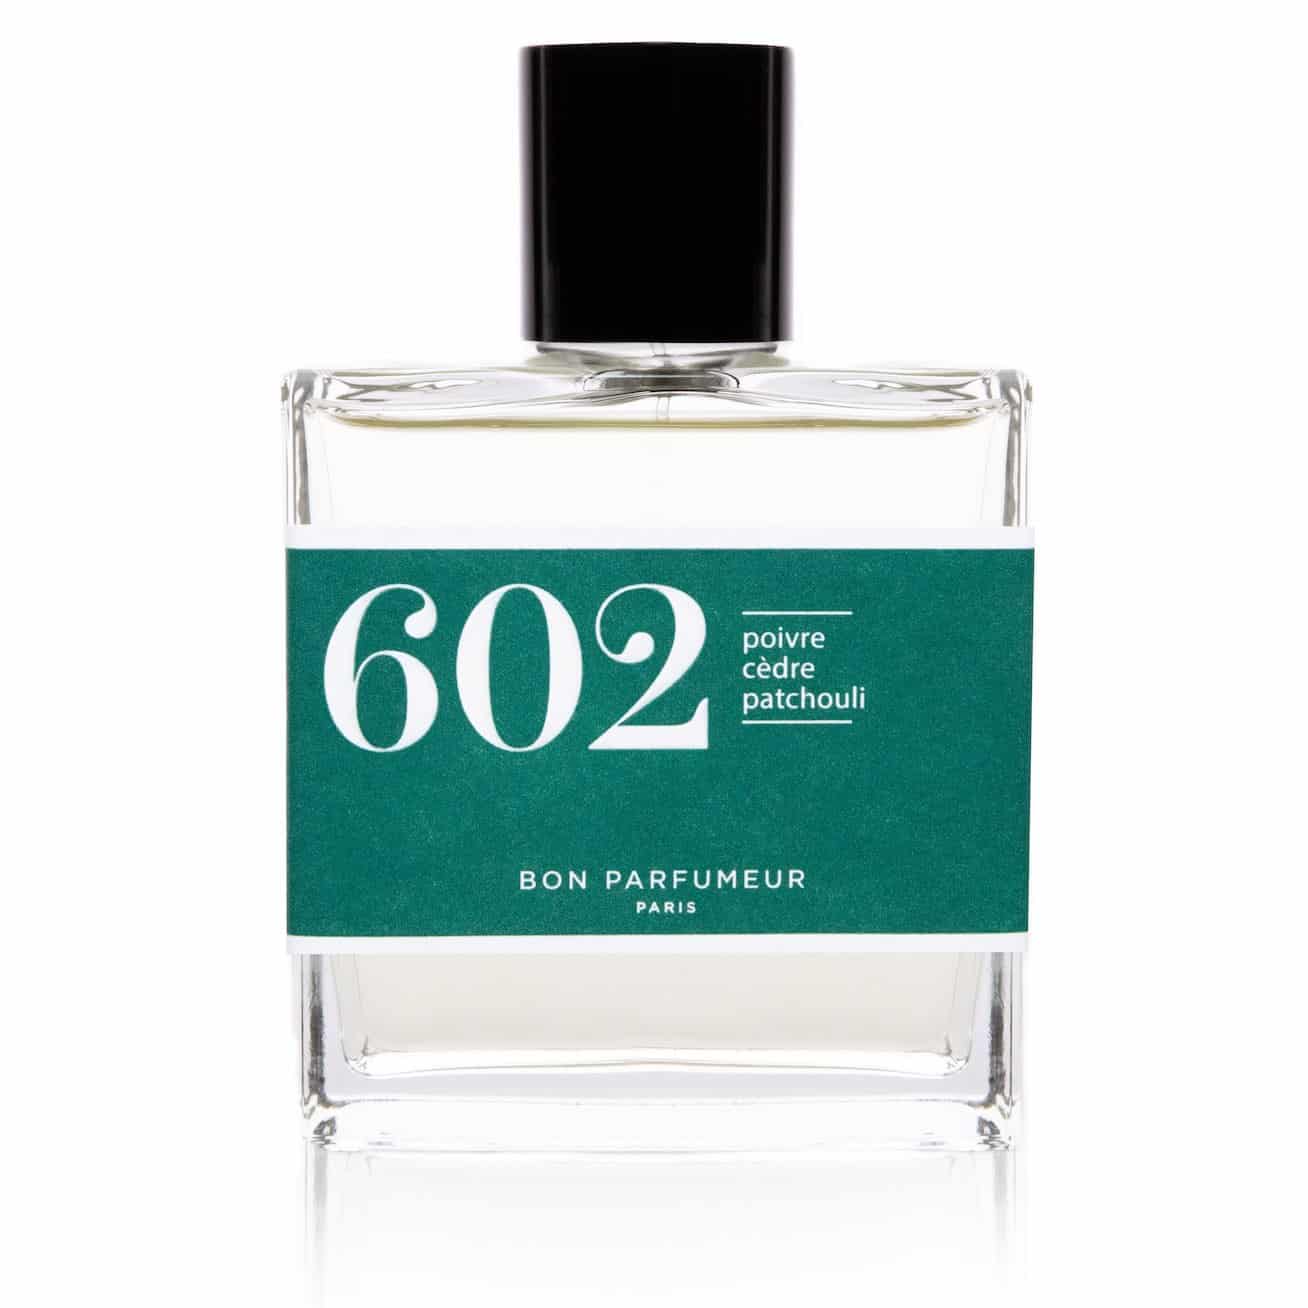 Bon Parfumeur Eau de parfum 602: pepper, cedar and patchouli 30ml